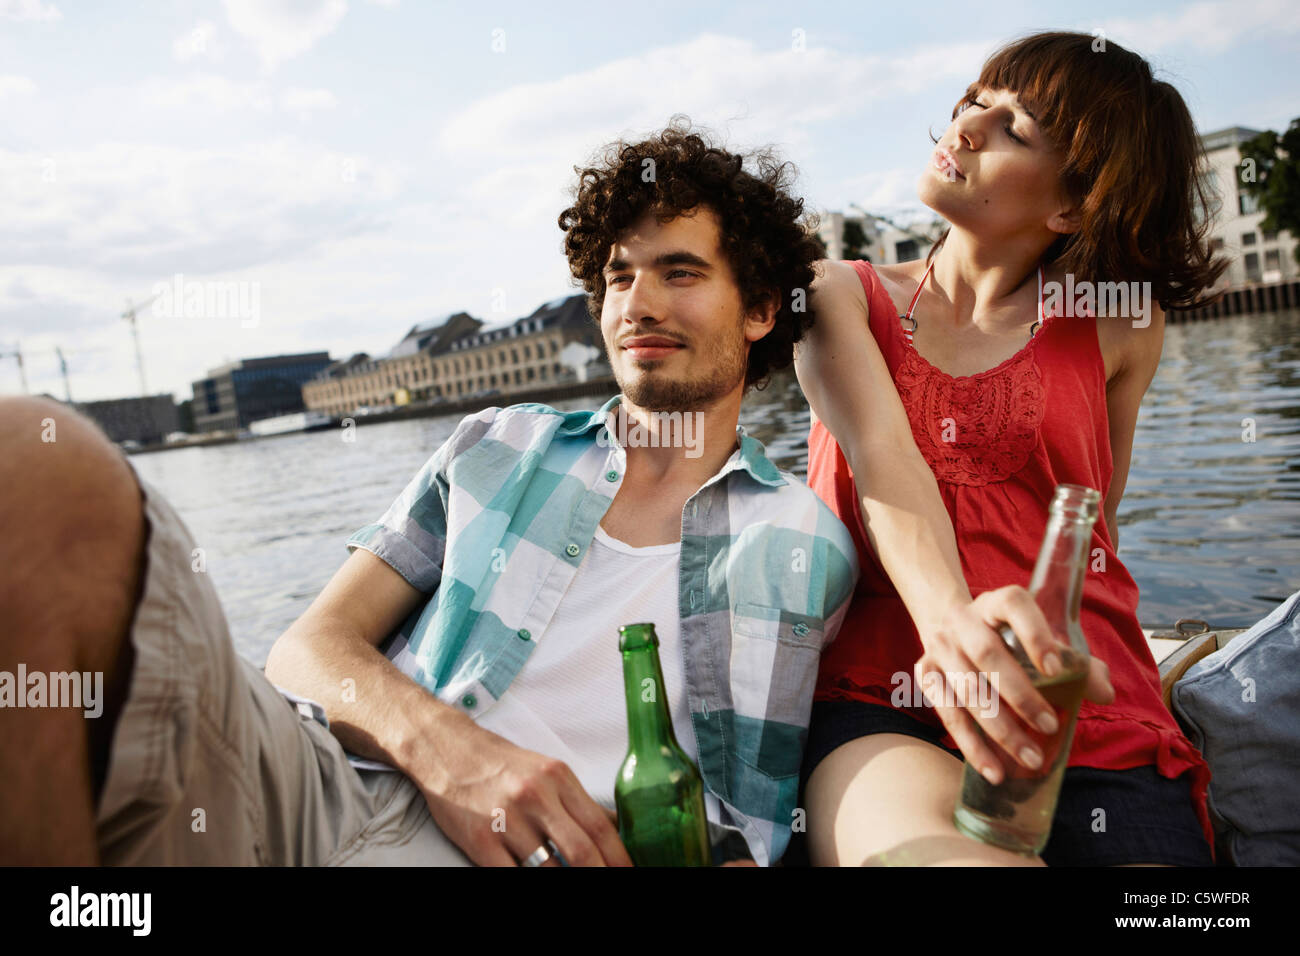 Germania Berlino giovane coppia su imbarcazione a motore, tenendo le bottiglie, ritratto, close-up Foto Stock